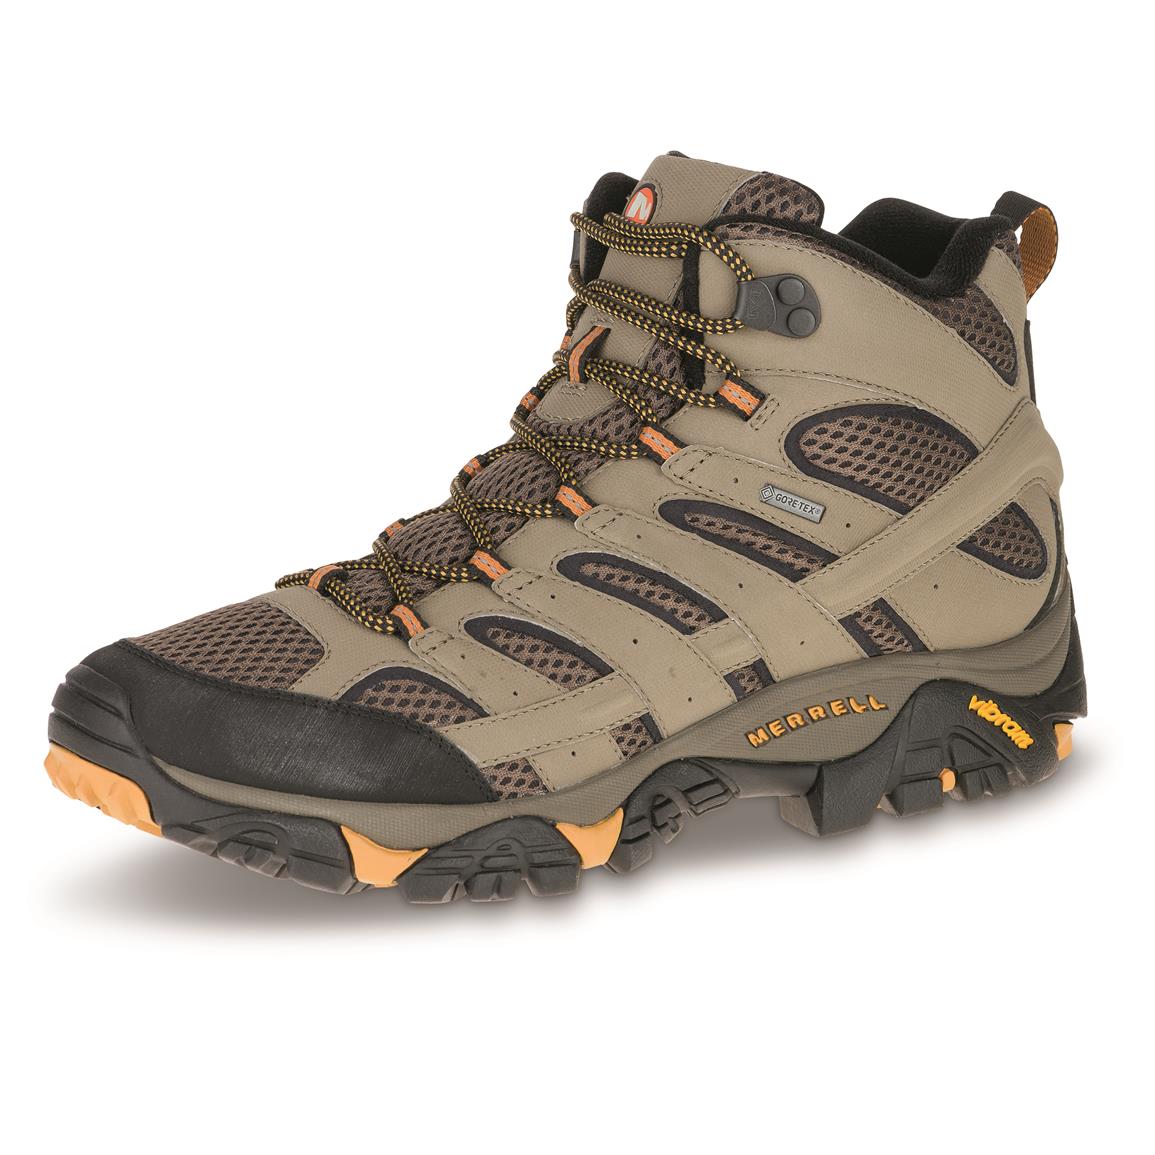 Merrell Men's Moab 2 GORE-TEX Waterproof Mid Hiking Boots, Walnut